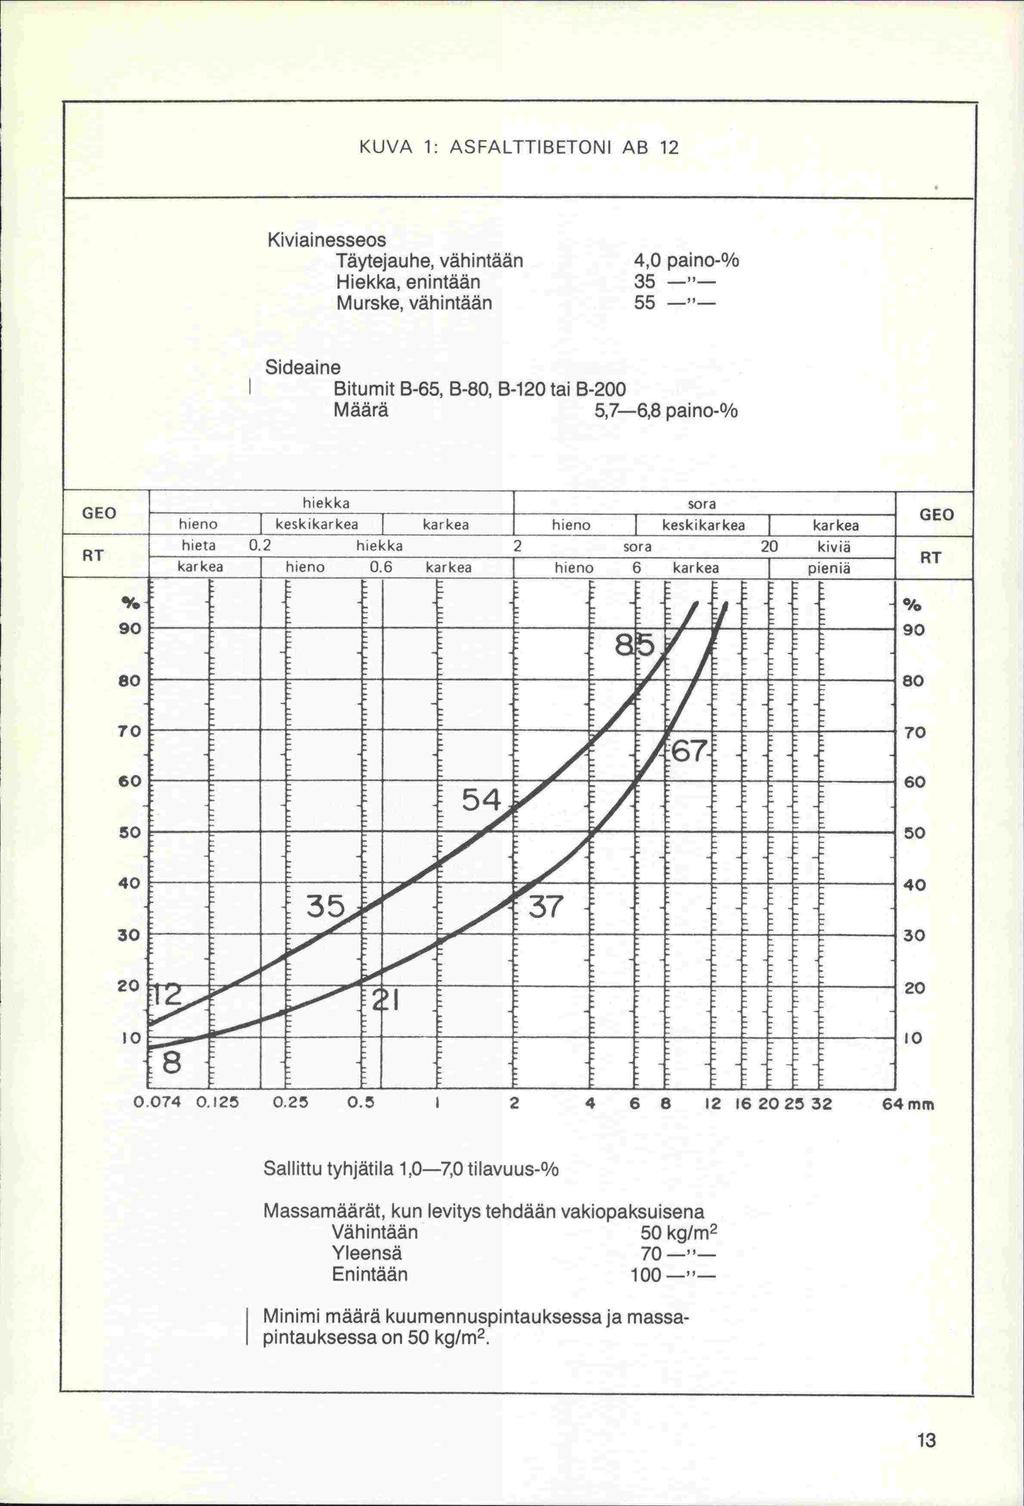 KUVA 1: ASFALTTIBETONI AB 12 Kiviai nesseos Täytejauhe, vähintään 4,0 paino-% Hiekka, enintään 35 -"- Murske, vähintään 55 -"- Sideaine Bitumit B-65, B-80, B-120 tai B-200 Määrä 5,7-6,8 paino-% hieno